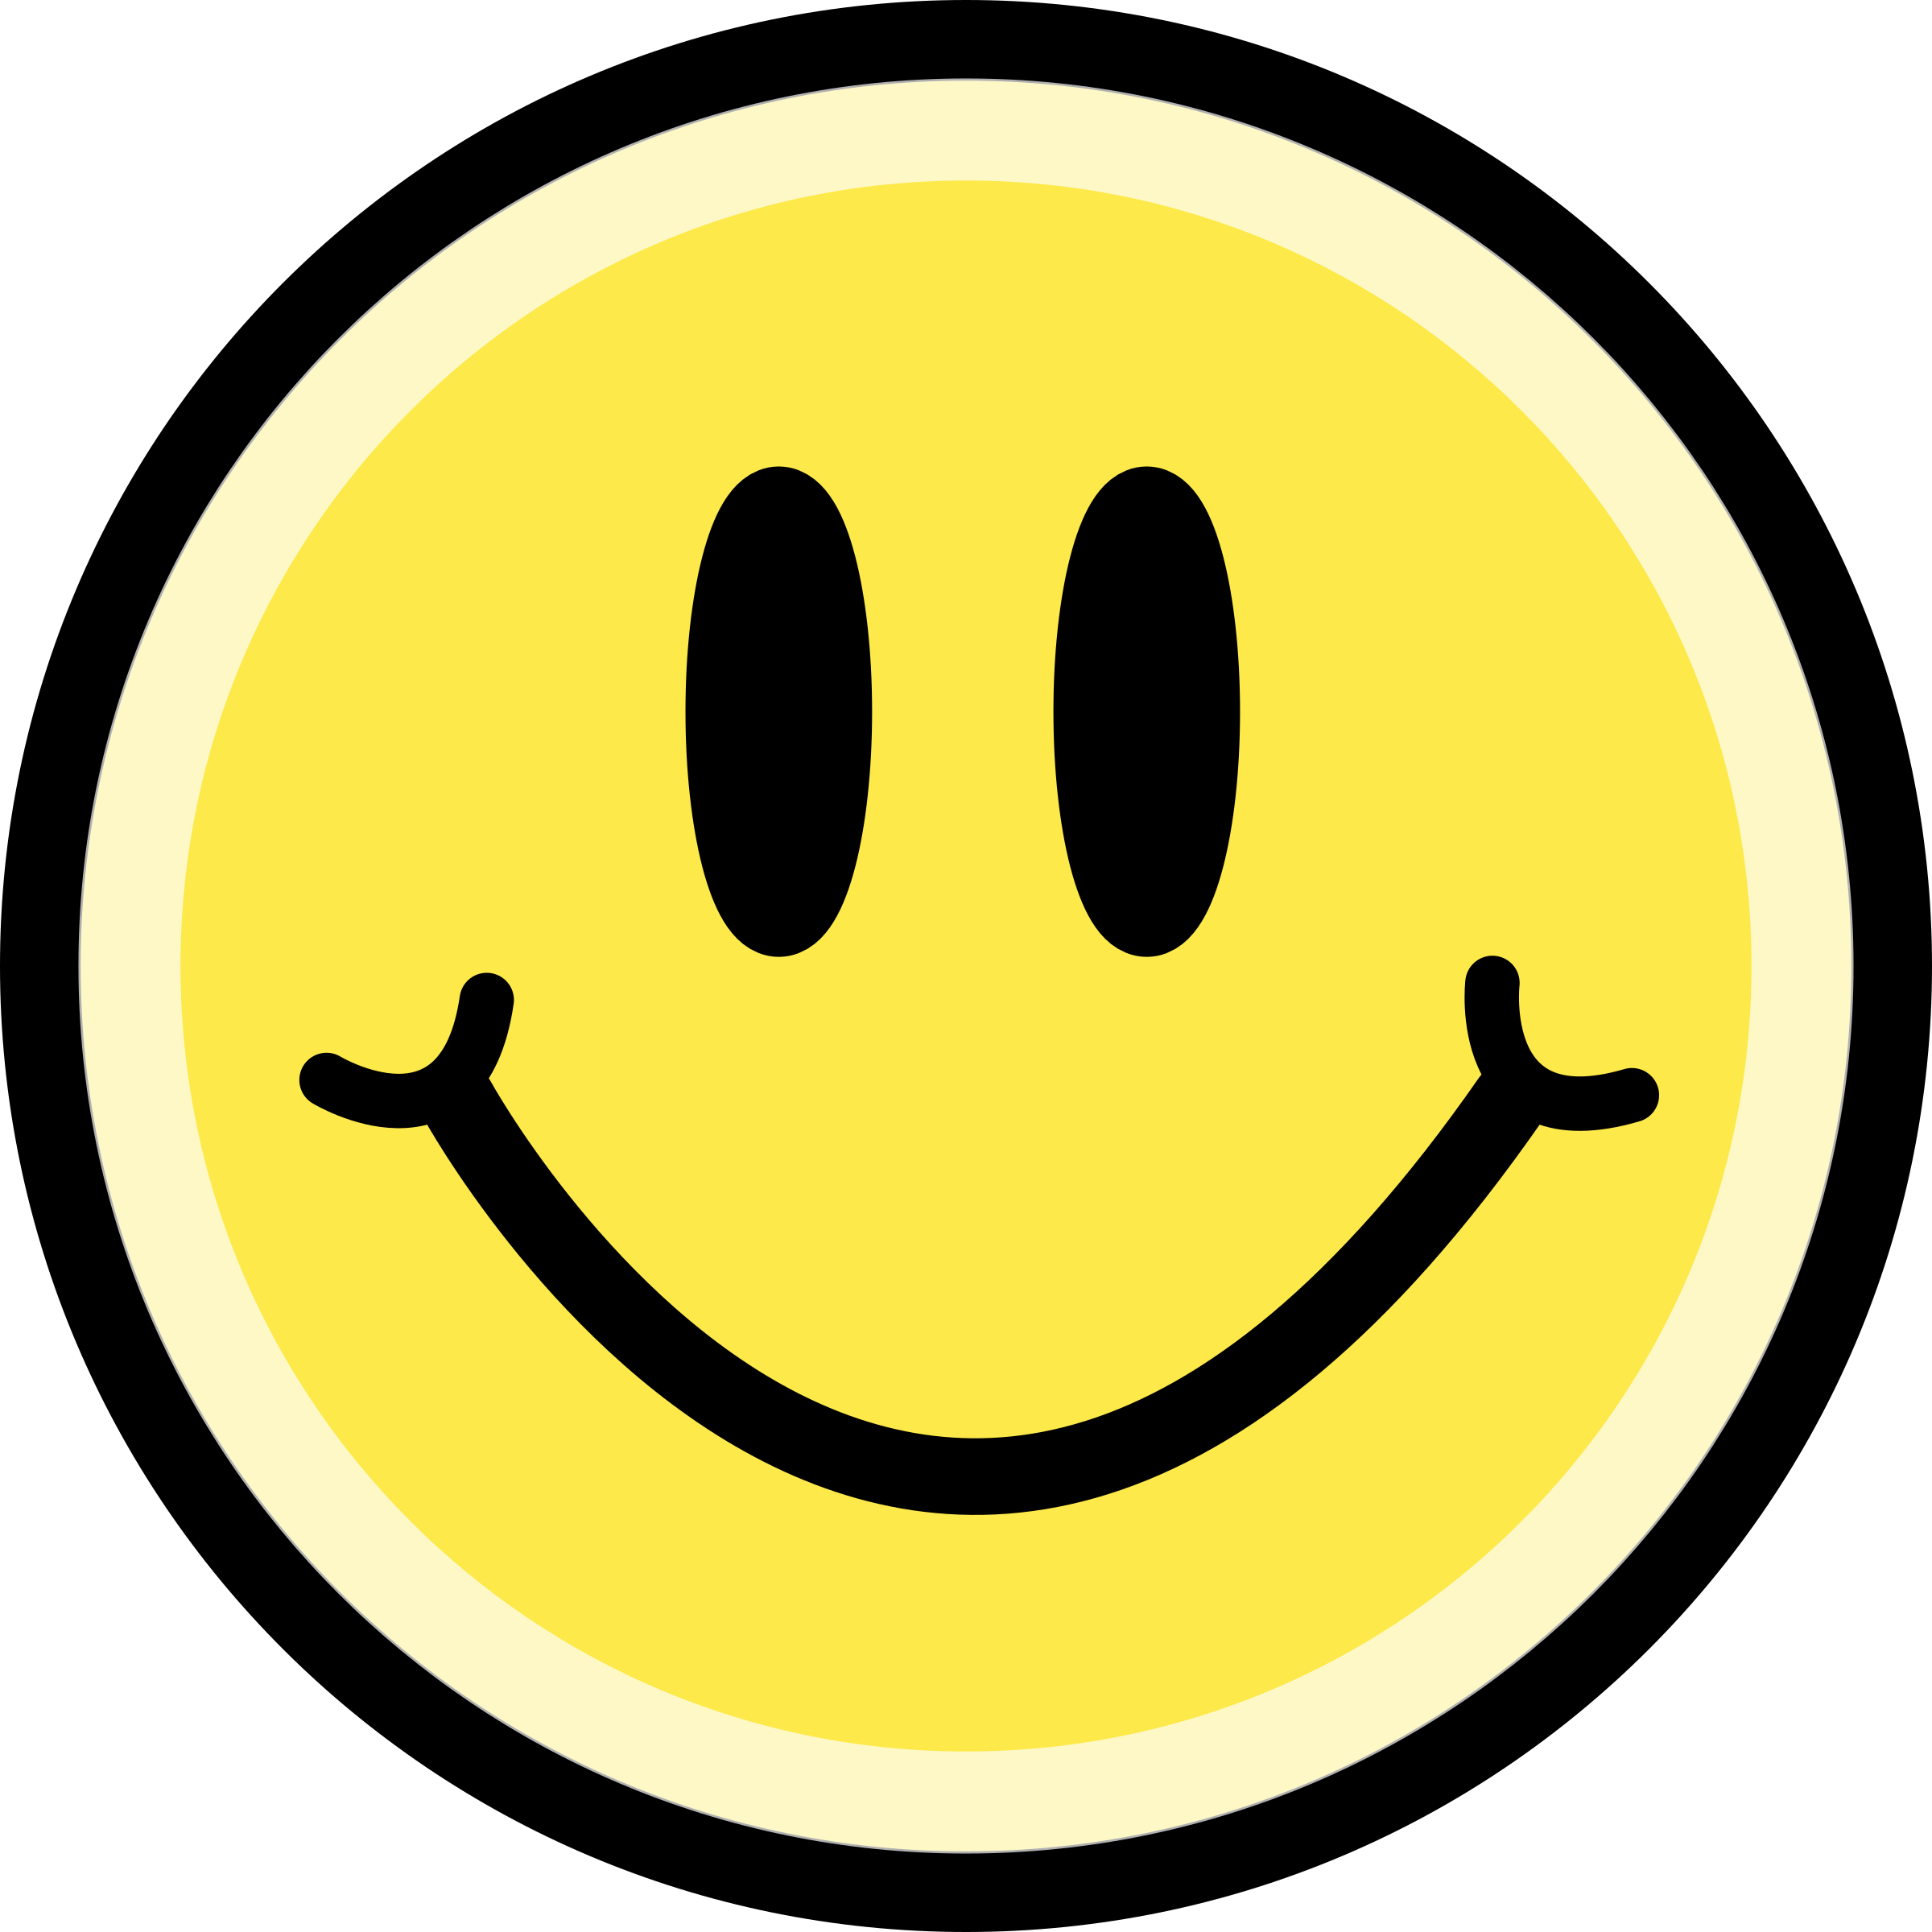 พื้นหลังภาพ Emoji PNG มีความสุข